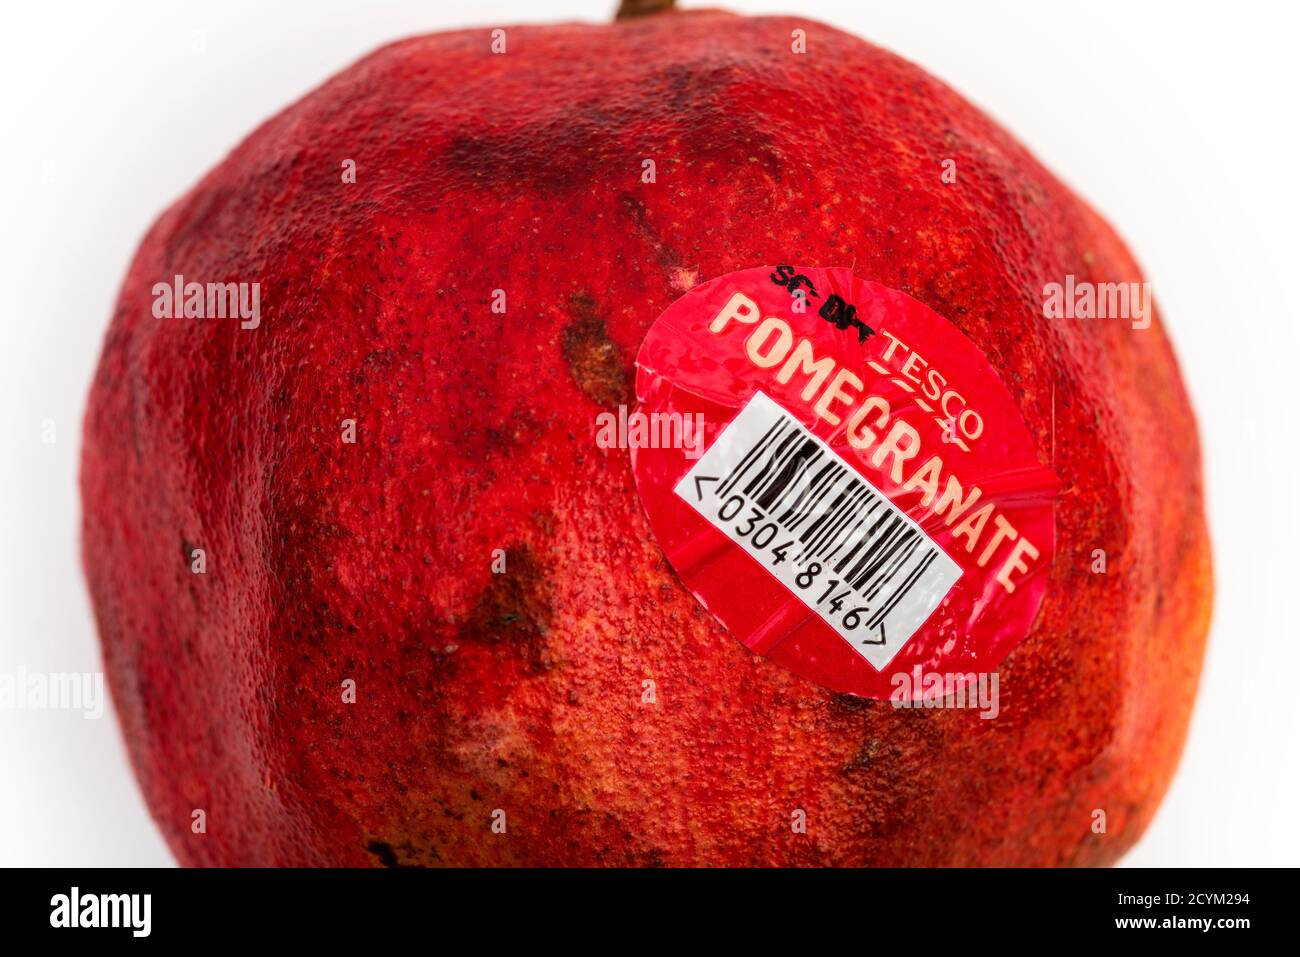 Tesco pomegranate Stock Photo